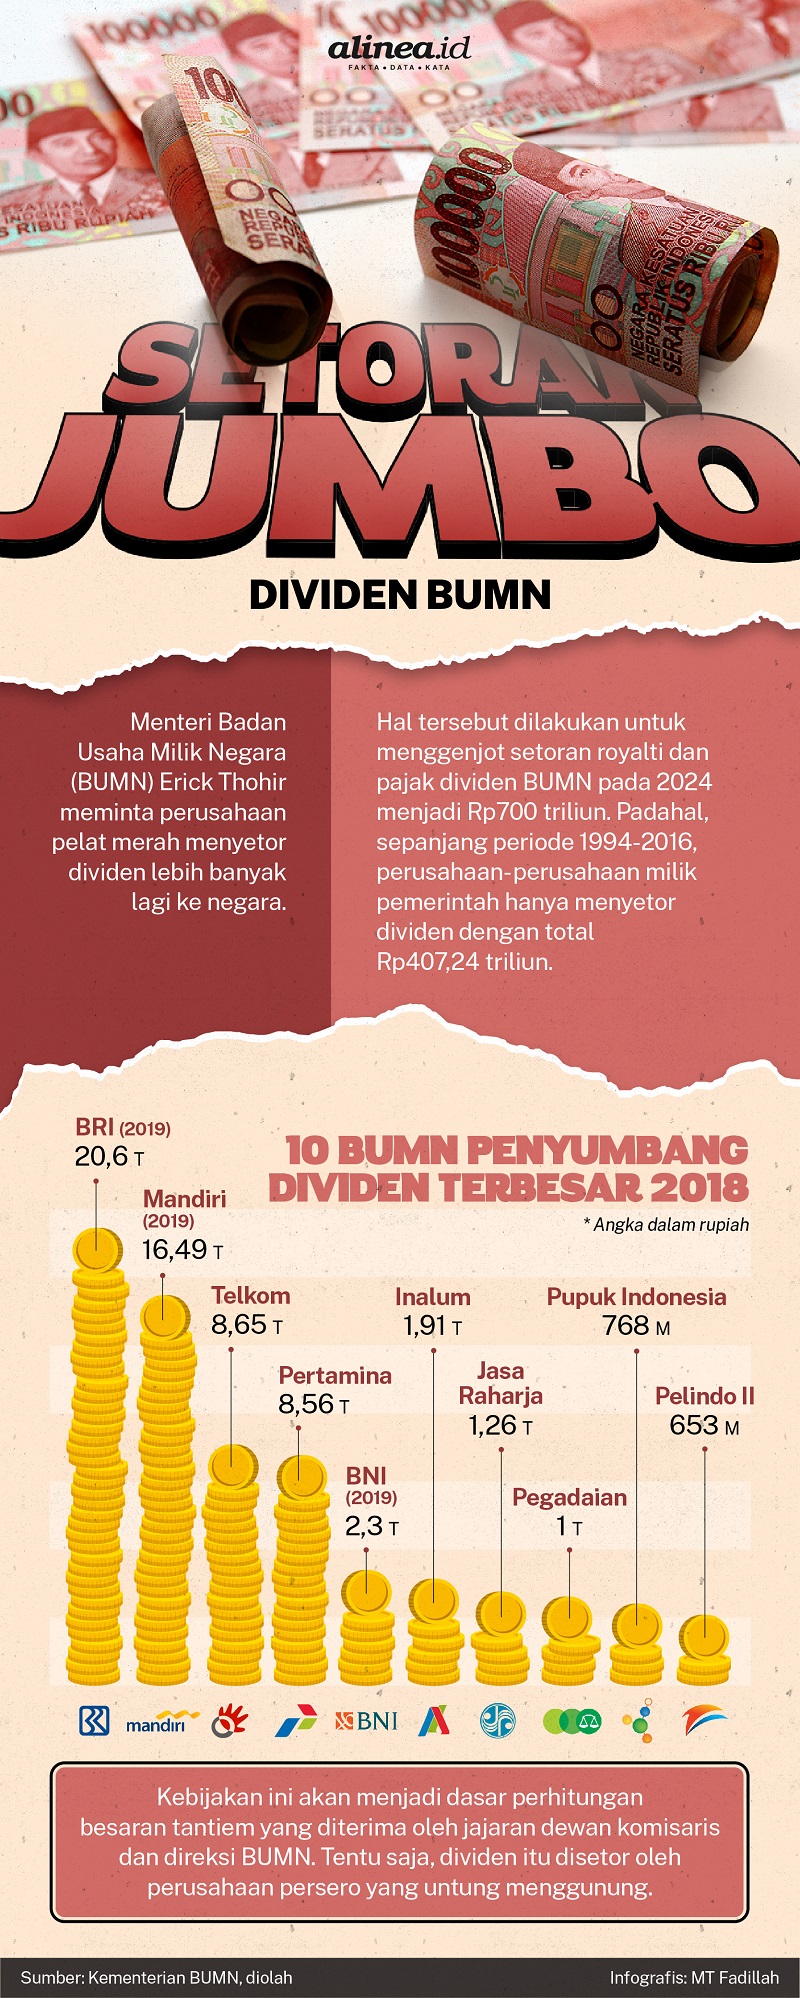 Infografik BUMN penyetor dividen terbesar kepada negara. Alinea.id/MT Fadillah